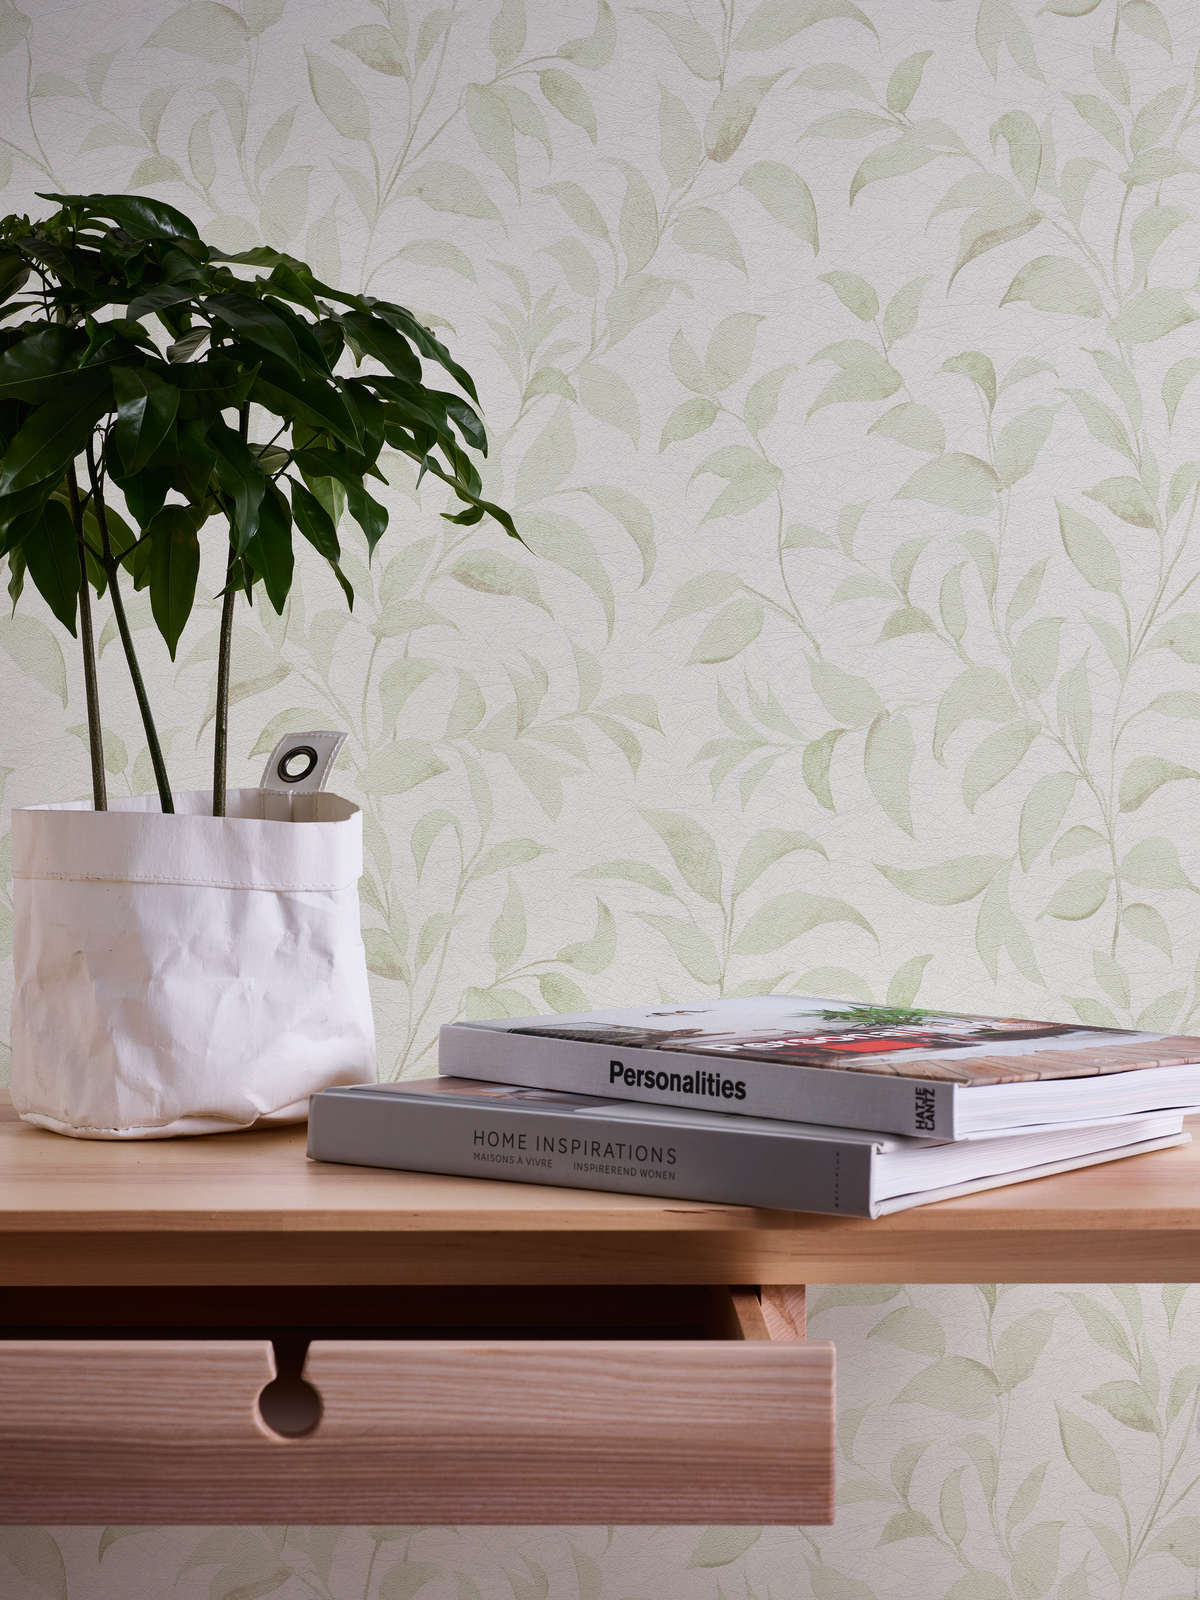             Blätter-Tapete floral schimmernd strukturiert – Weiß, Grün
        